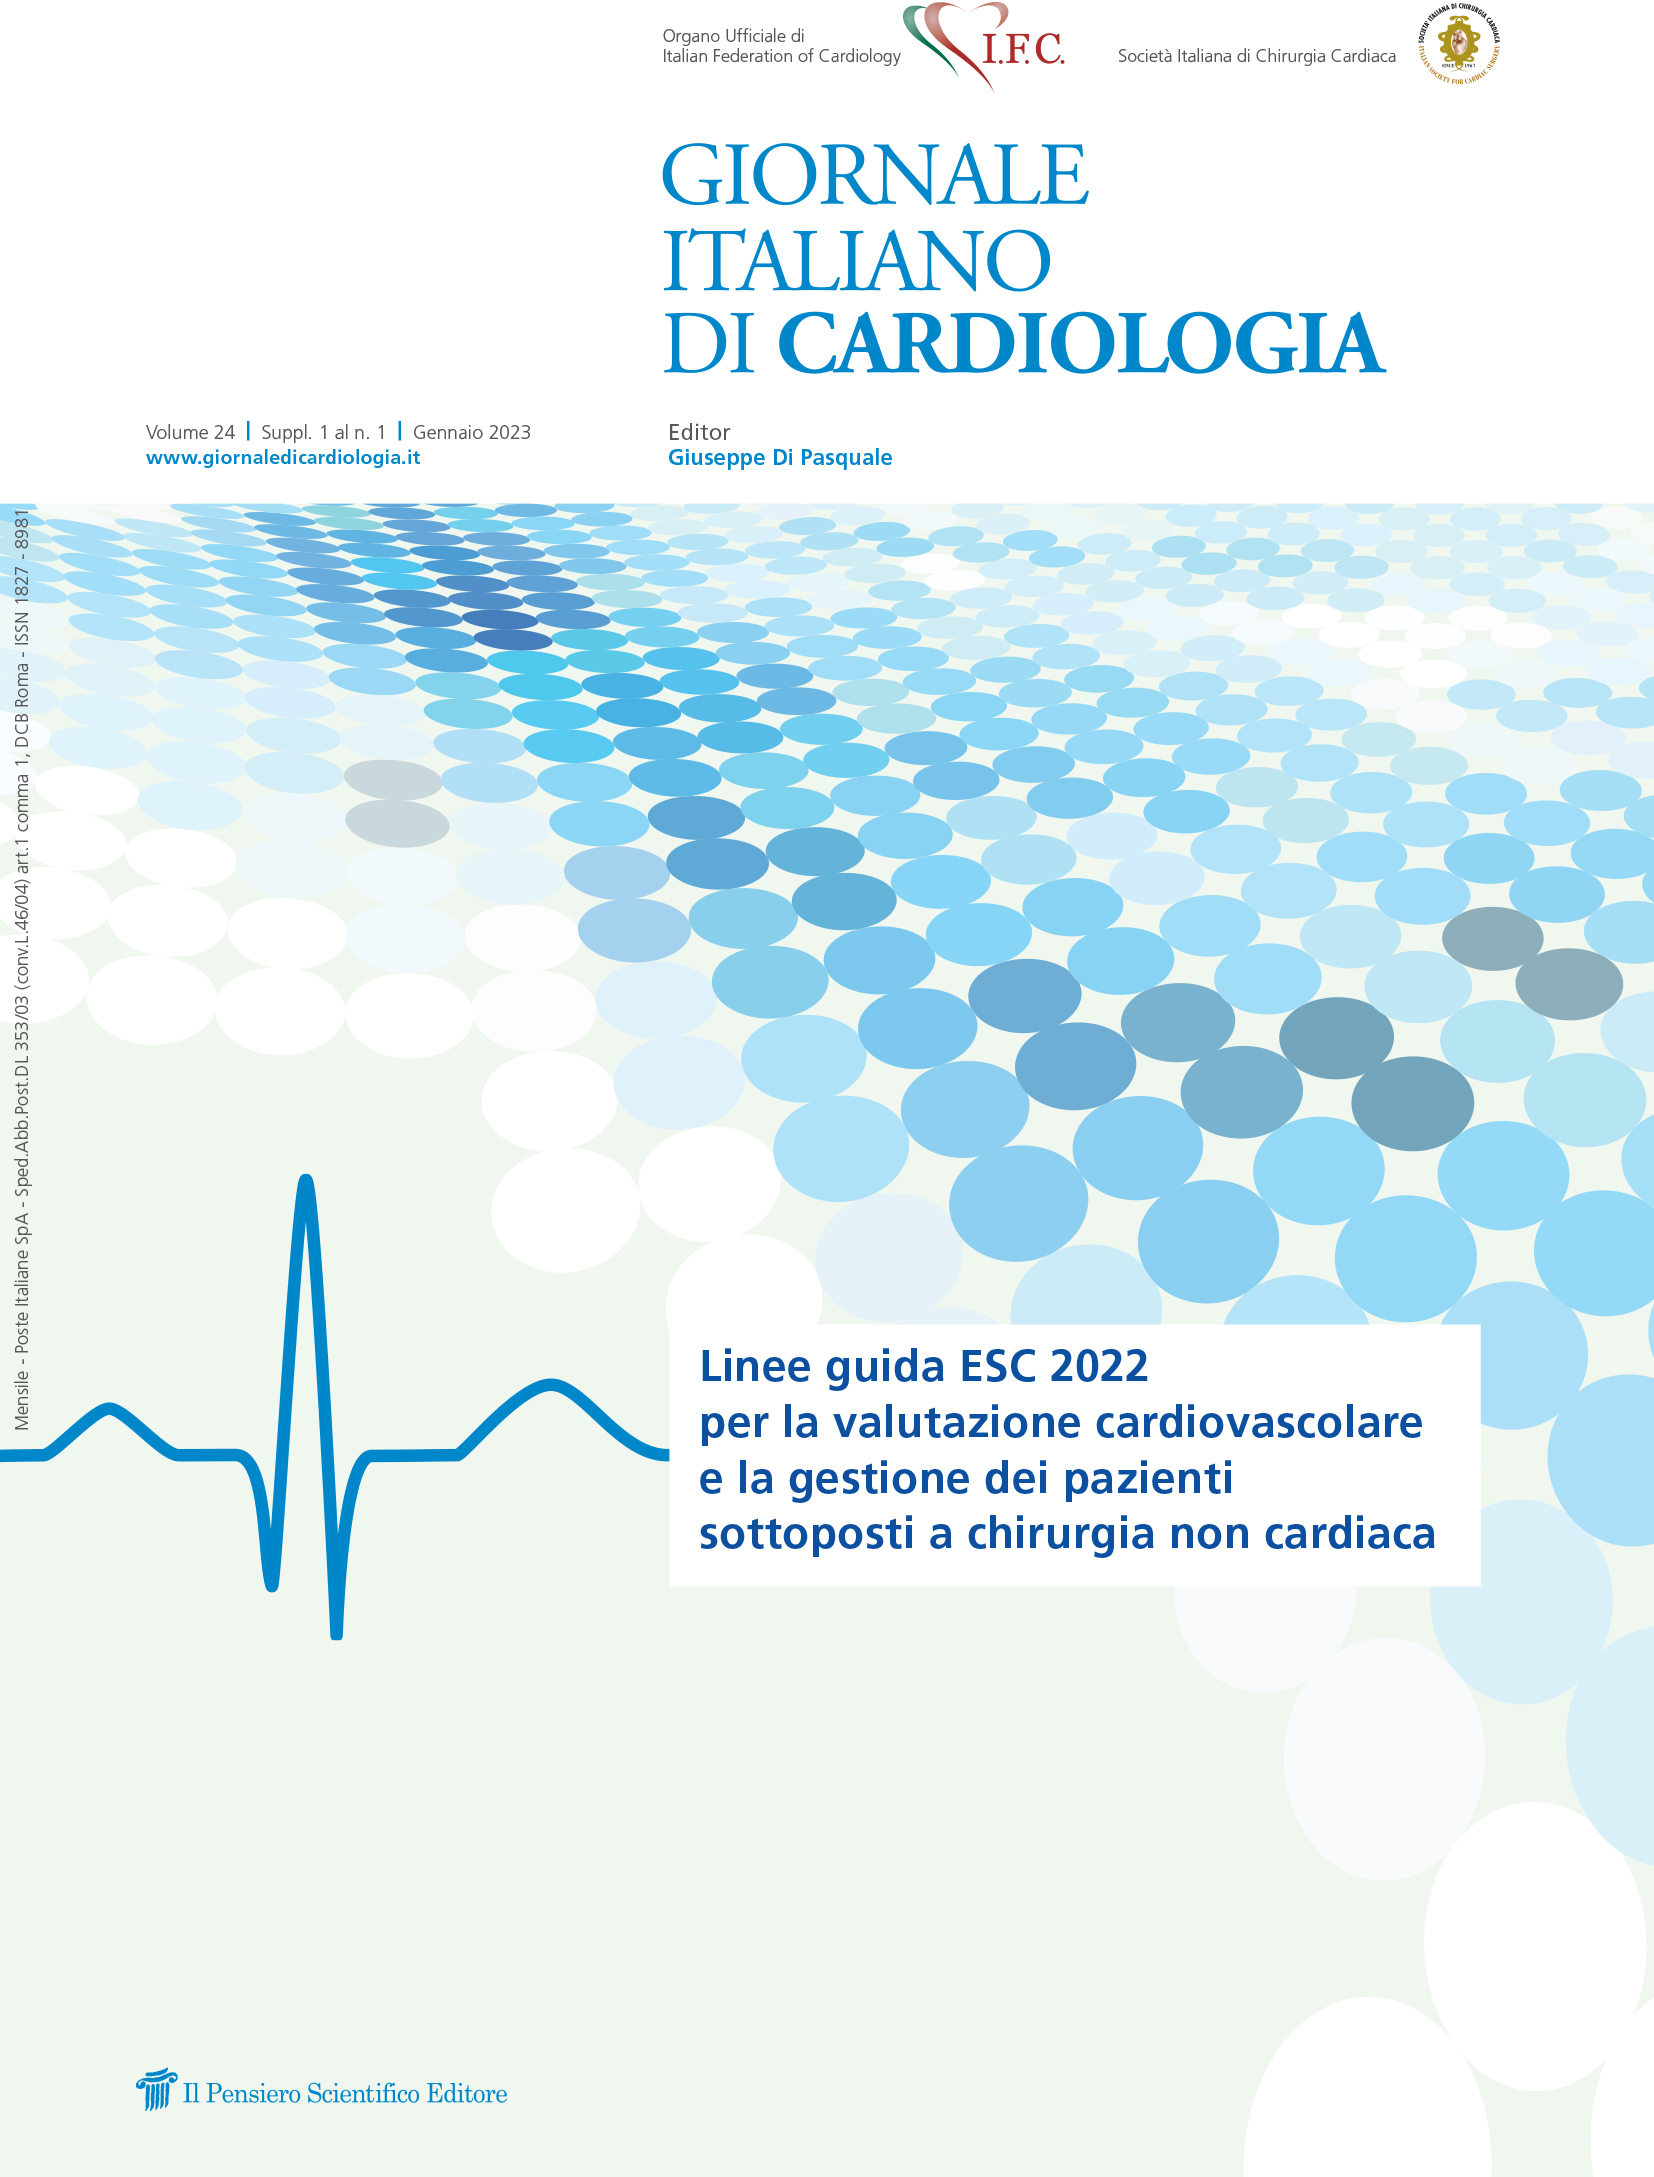 2023 Vol. 24 Suppl. 1 al N. 1 GennaioLinee guida ESC 2022 per la valutazione
cardiovascolare e la gestione dei pazienti sottoposti
a chirurgia non cardiaca